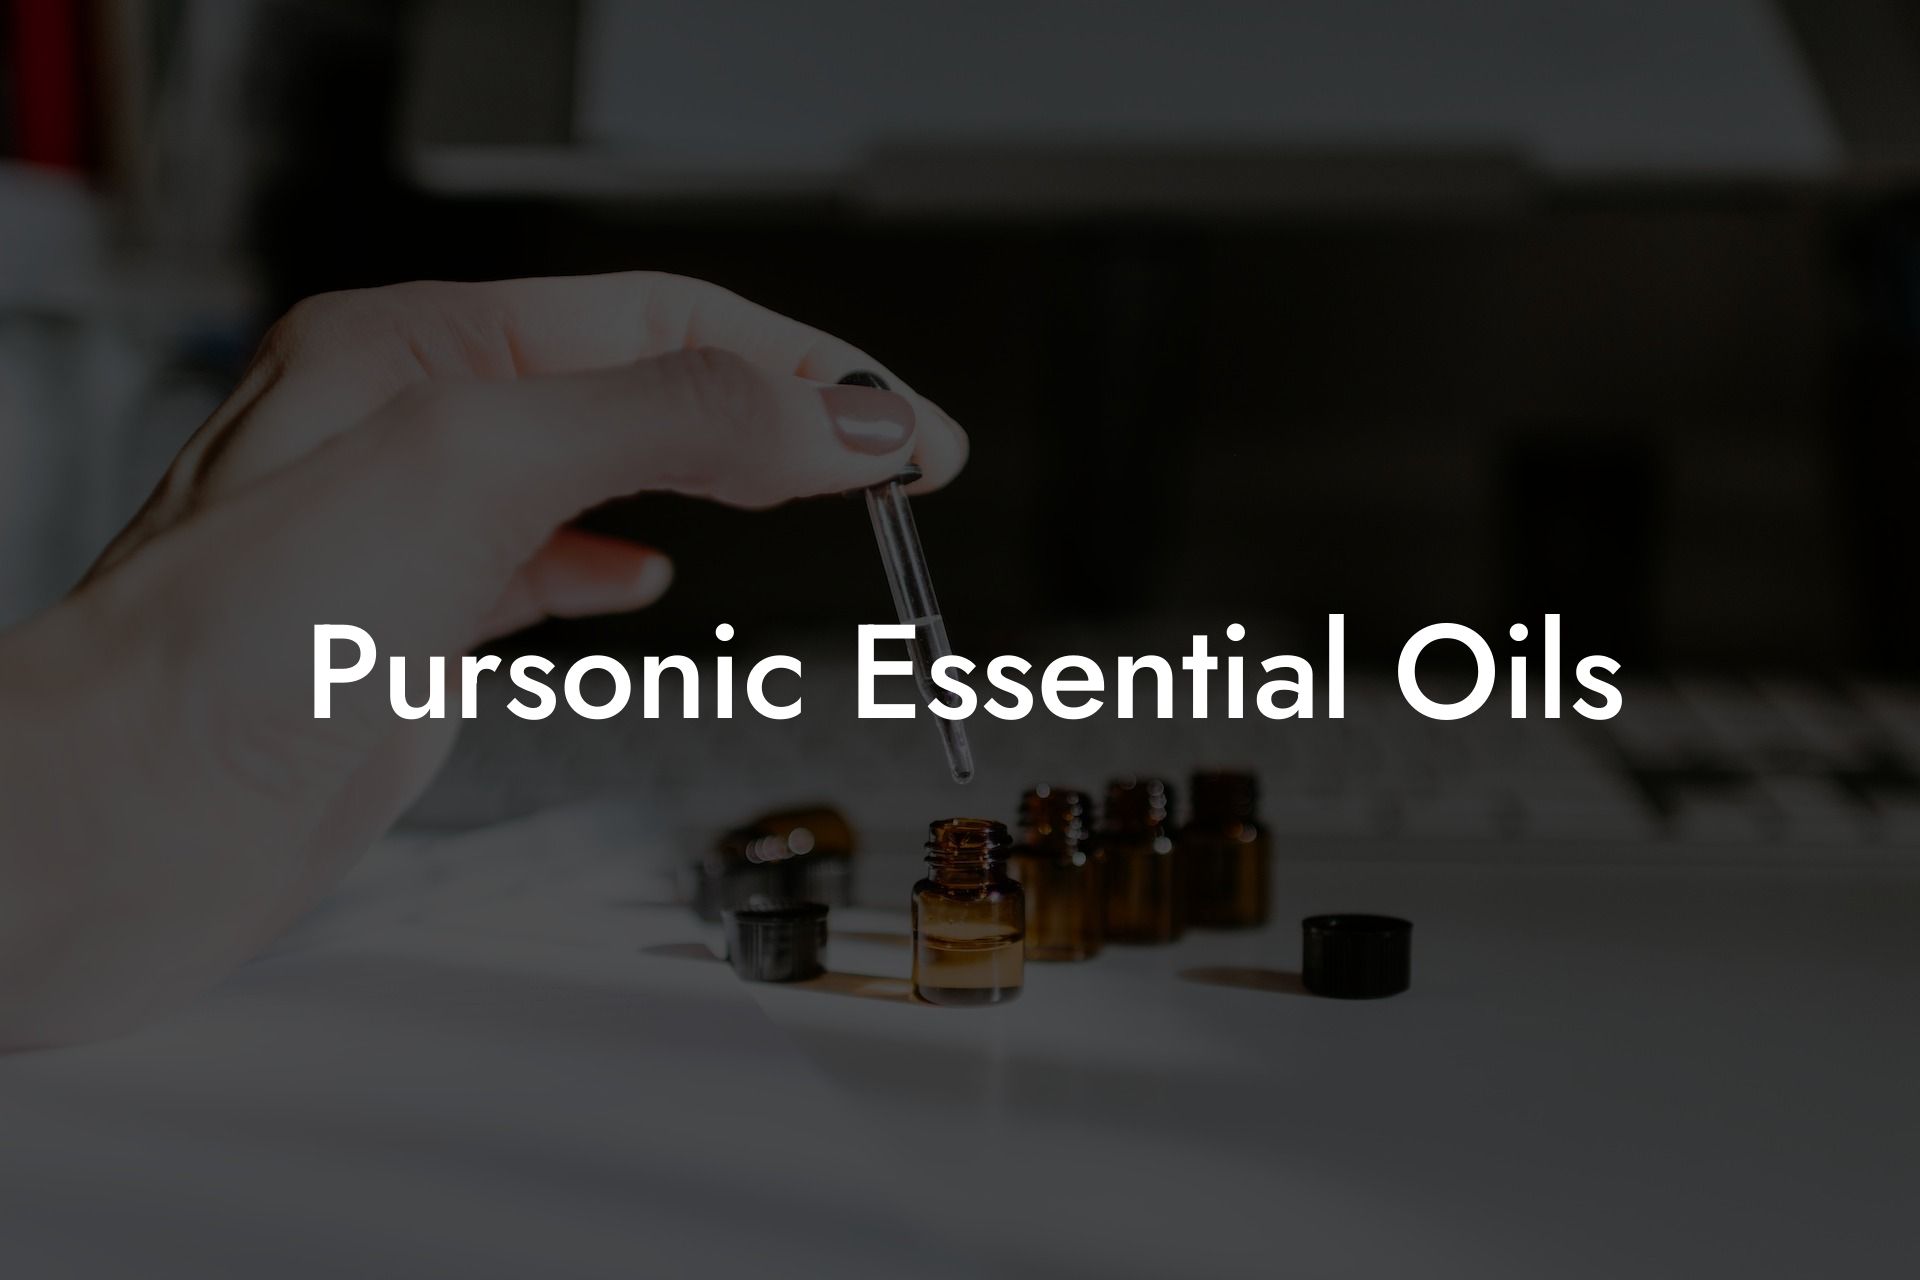 Pursonic Essential Oils